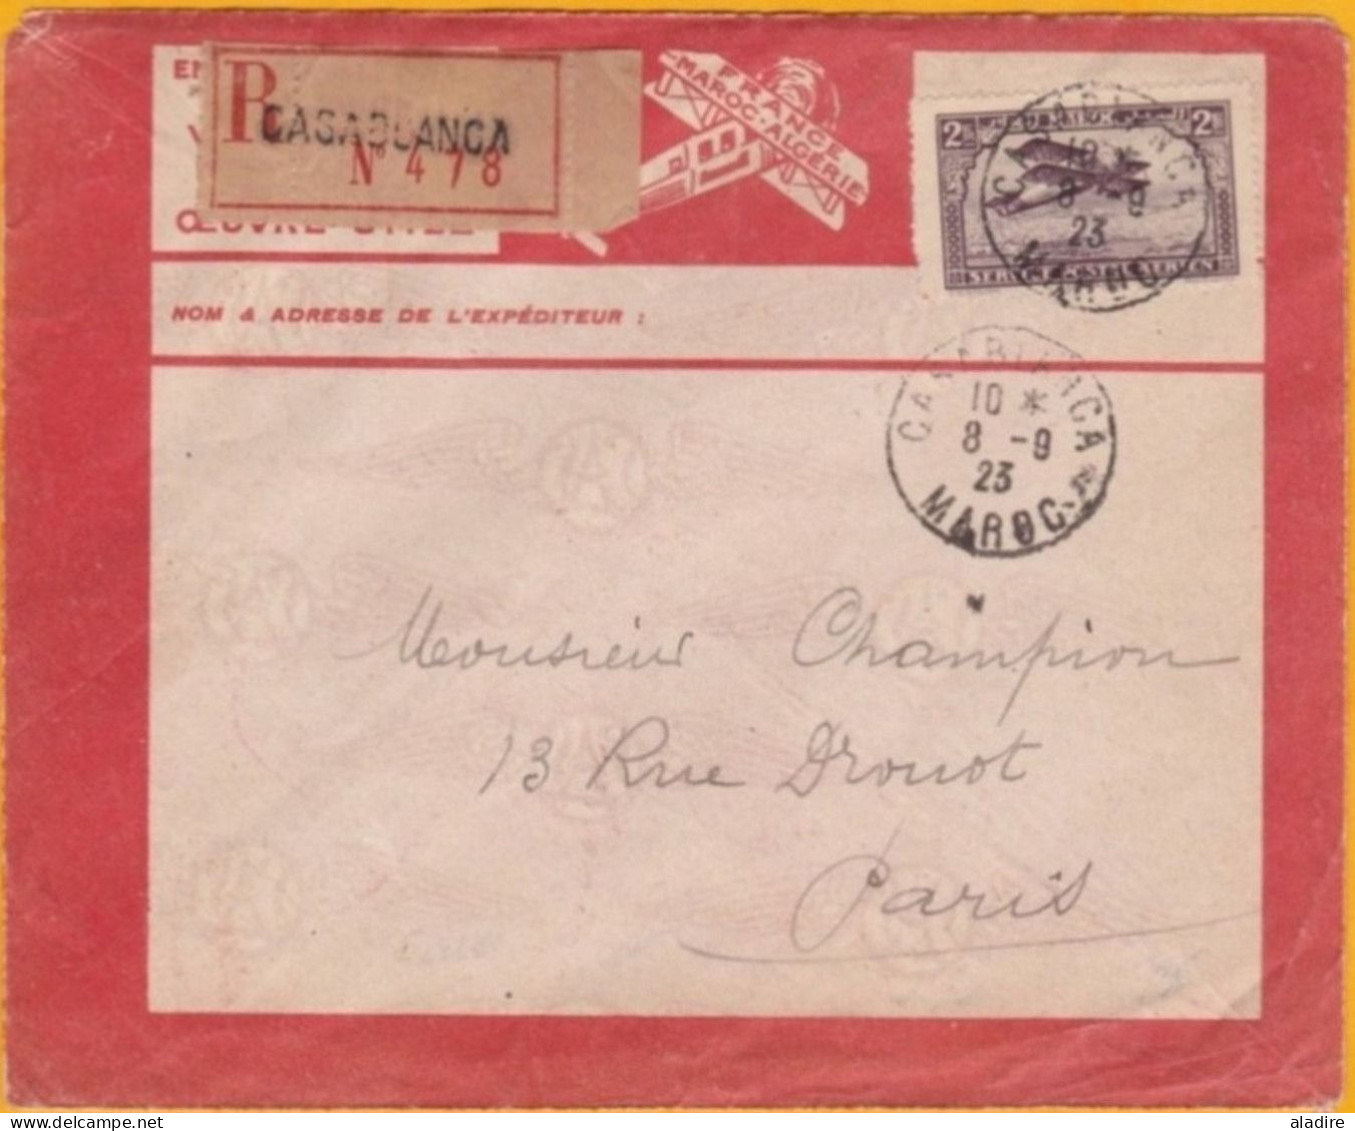 8 Septembre 1923 - Maroc Précurseur Avion - Lettre Recommandée De Casablanca Vers Paris Par Lignes Aériennes Latécoère - Poste Aérienne